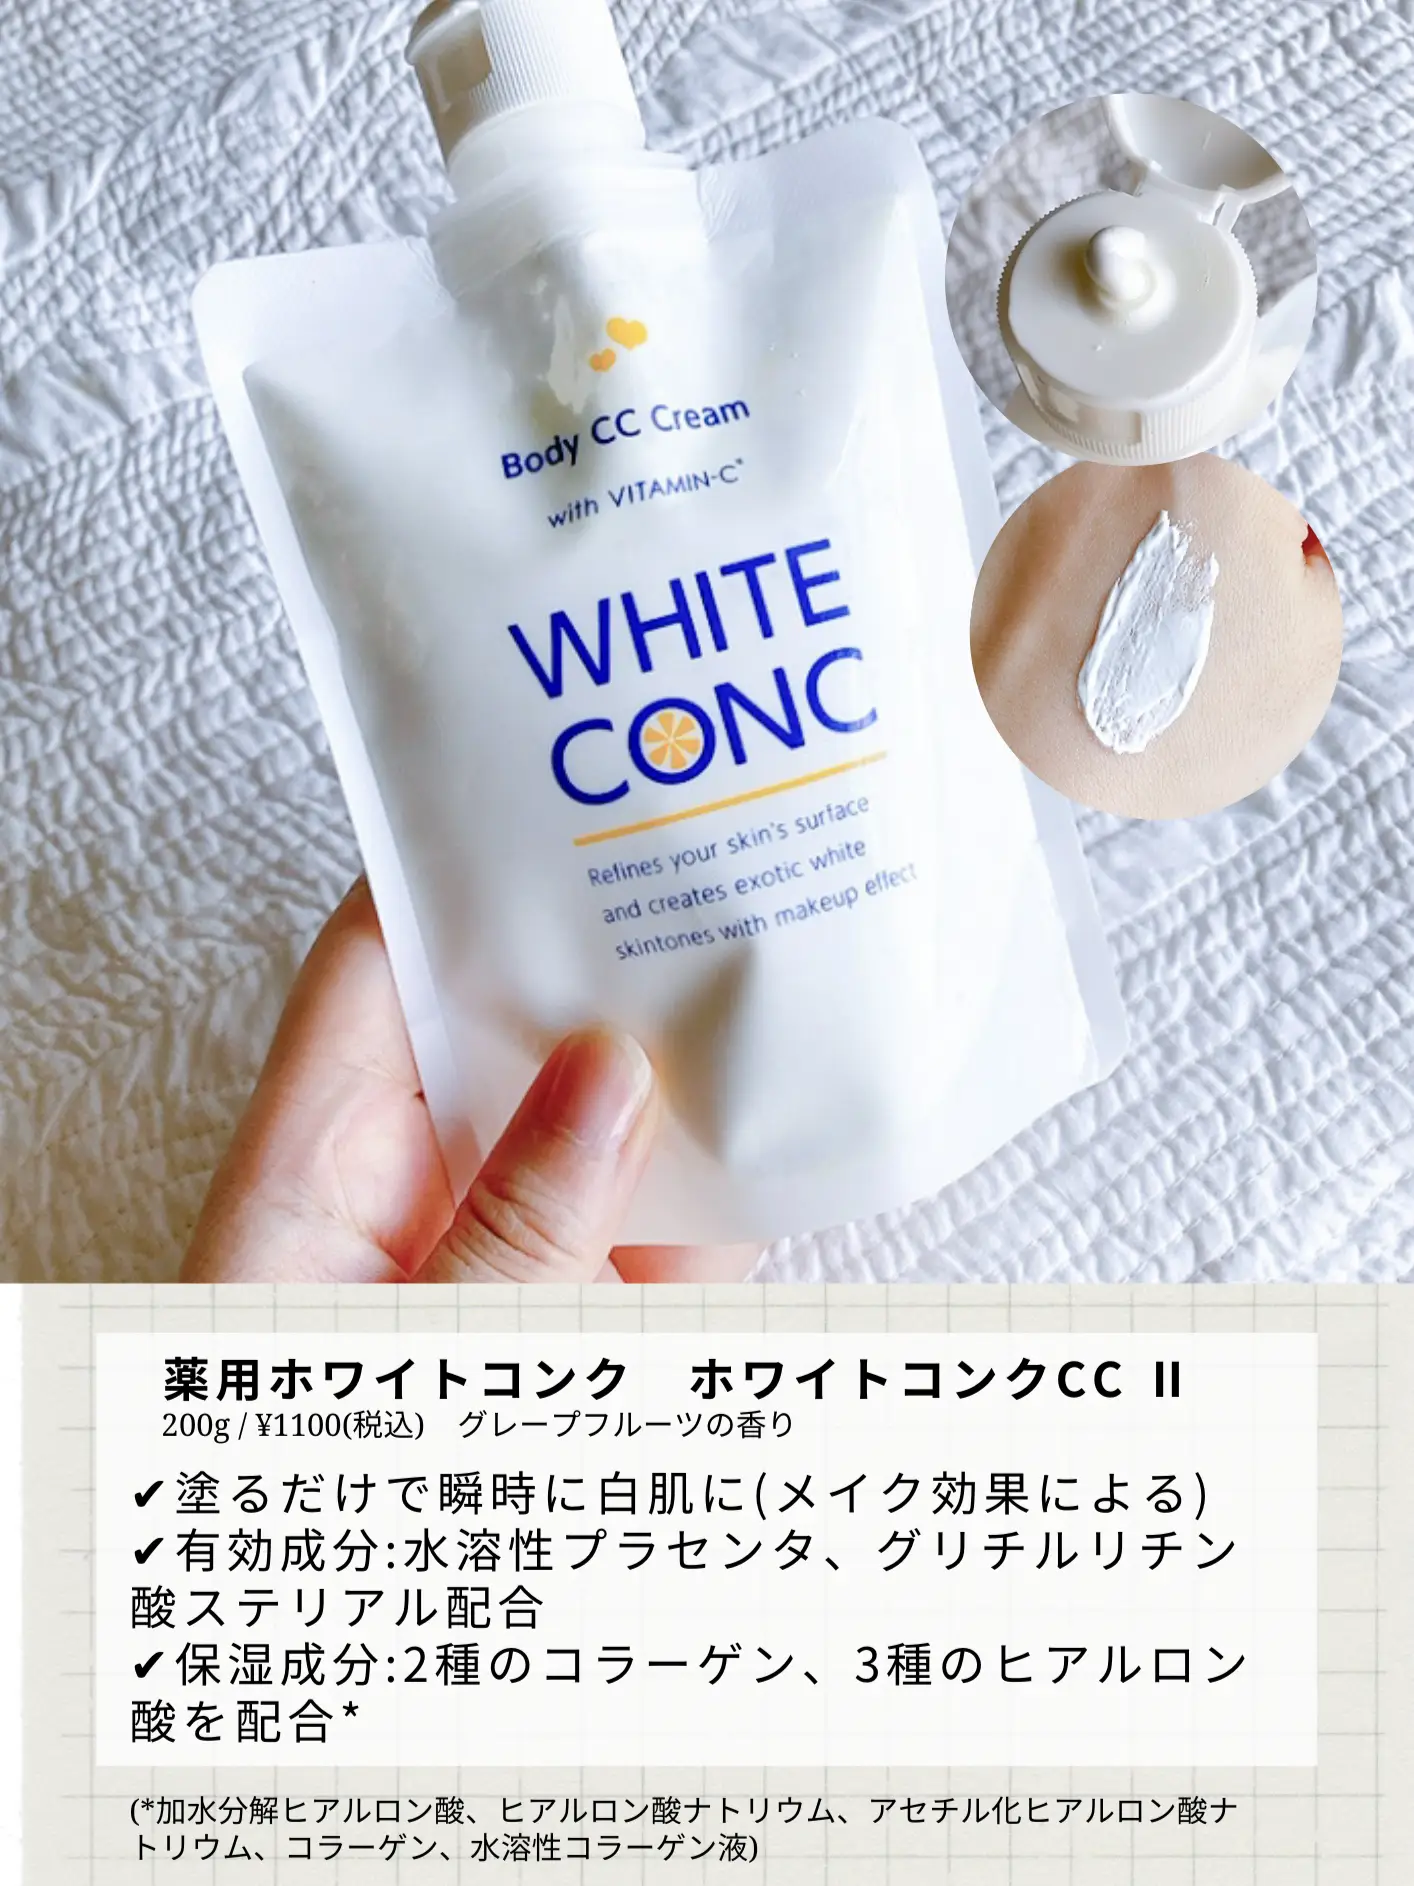 ホワイトコンク CCクリーム - ボディクリーム